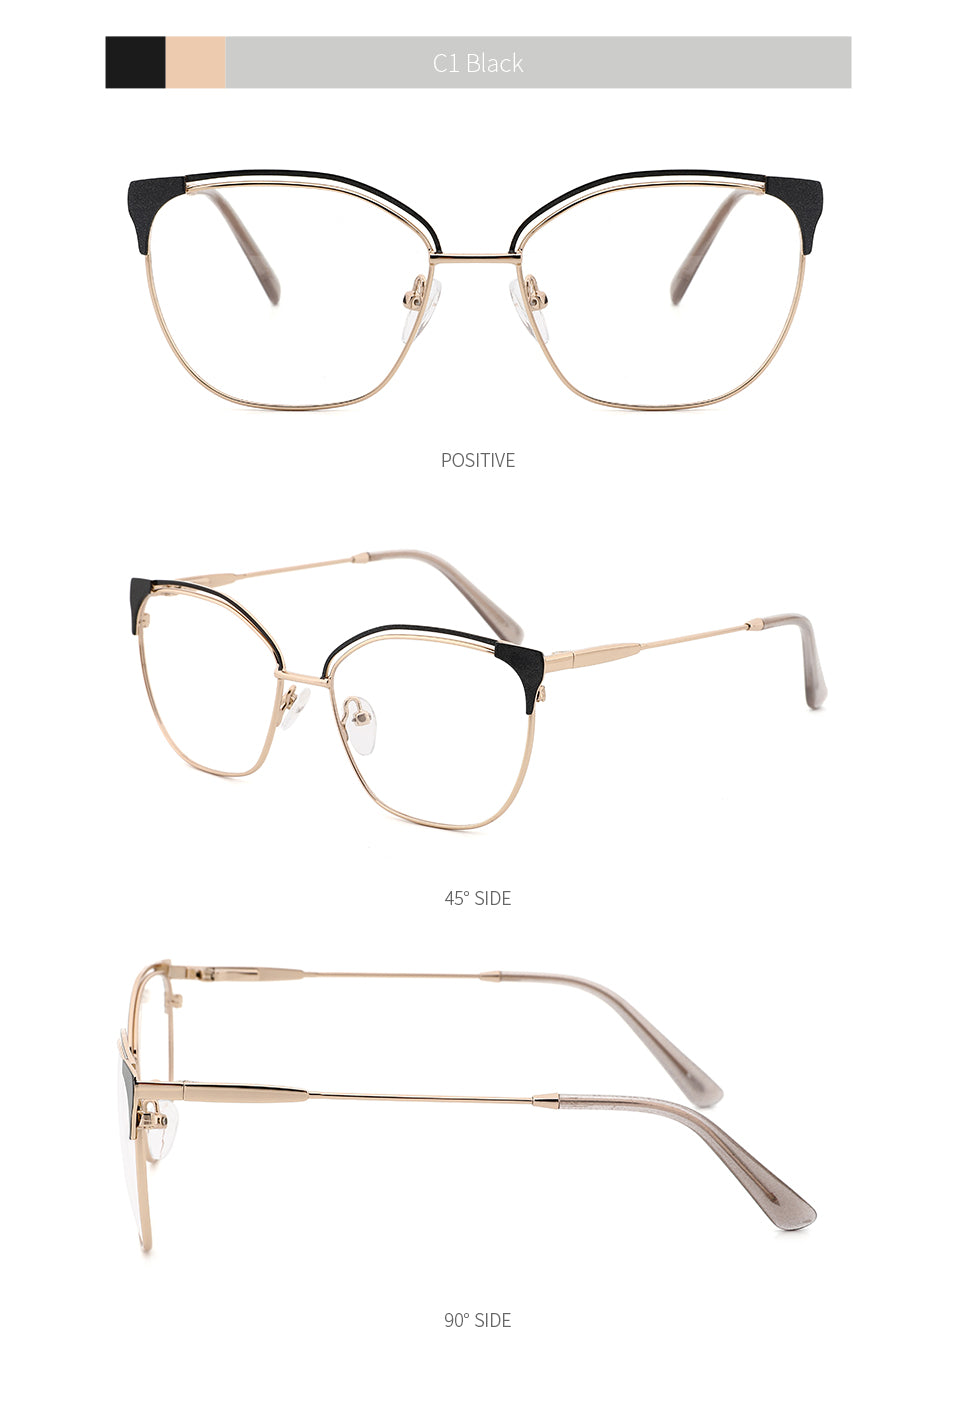 Kansept Women's Full Rim Cat Eye Stainless Steel Frame Eyeglasses Mg3532 Full Rim Kansept   